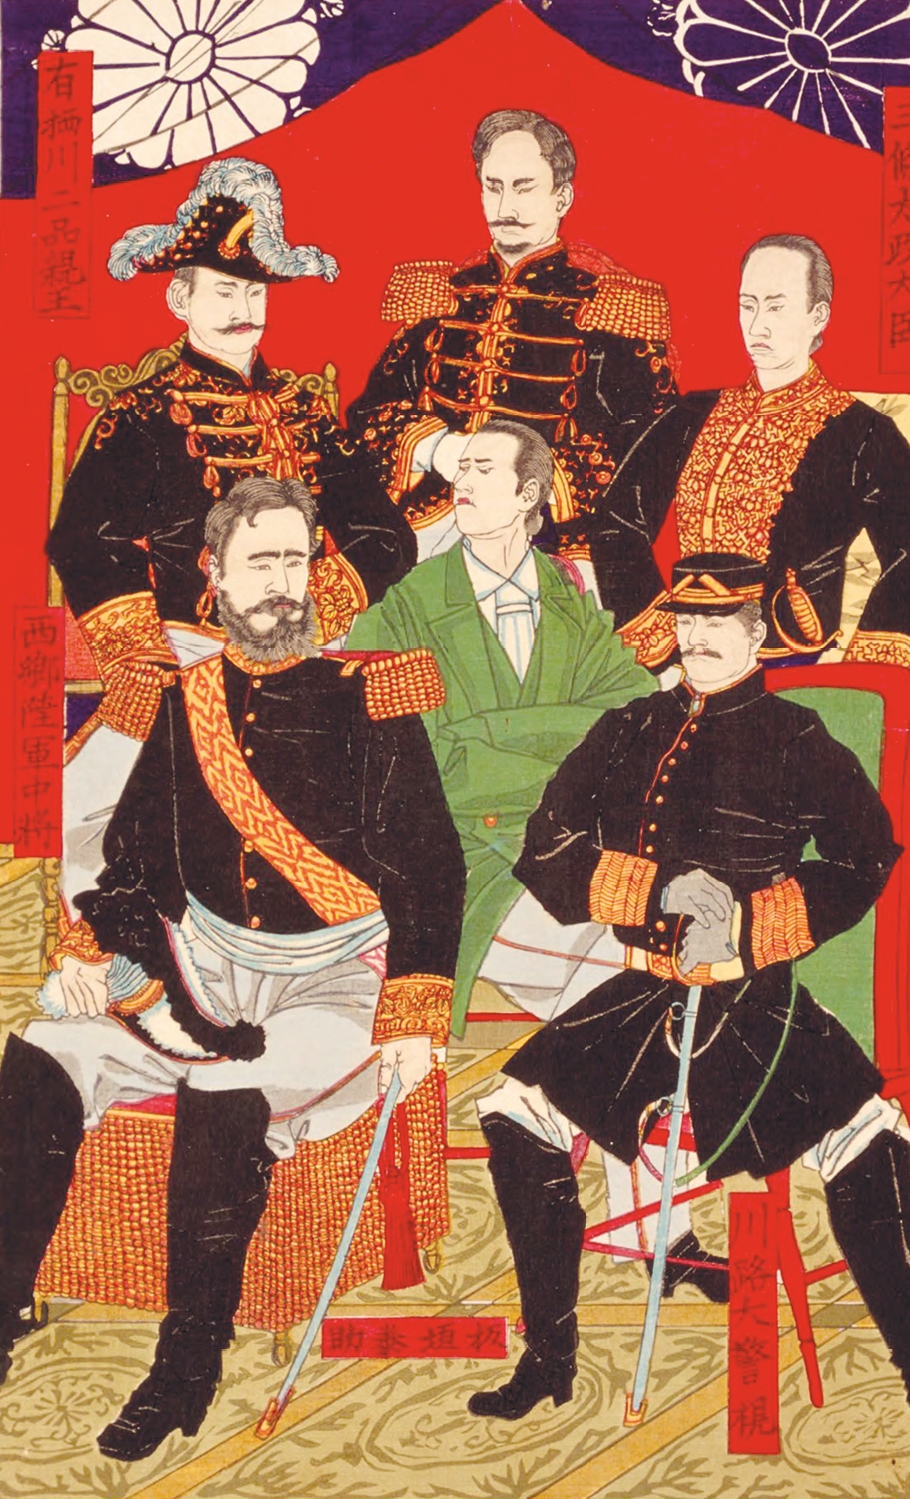 Gravura. Ao centro, um homem asiático, usando roupas verdes, está sentado. Ao redor, cinco homens asiáticos, usando farda preta e espadas, estão sentados.